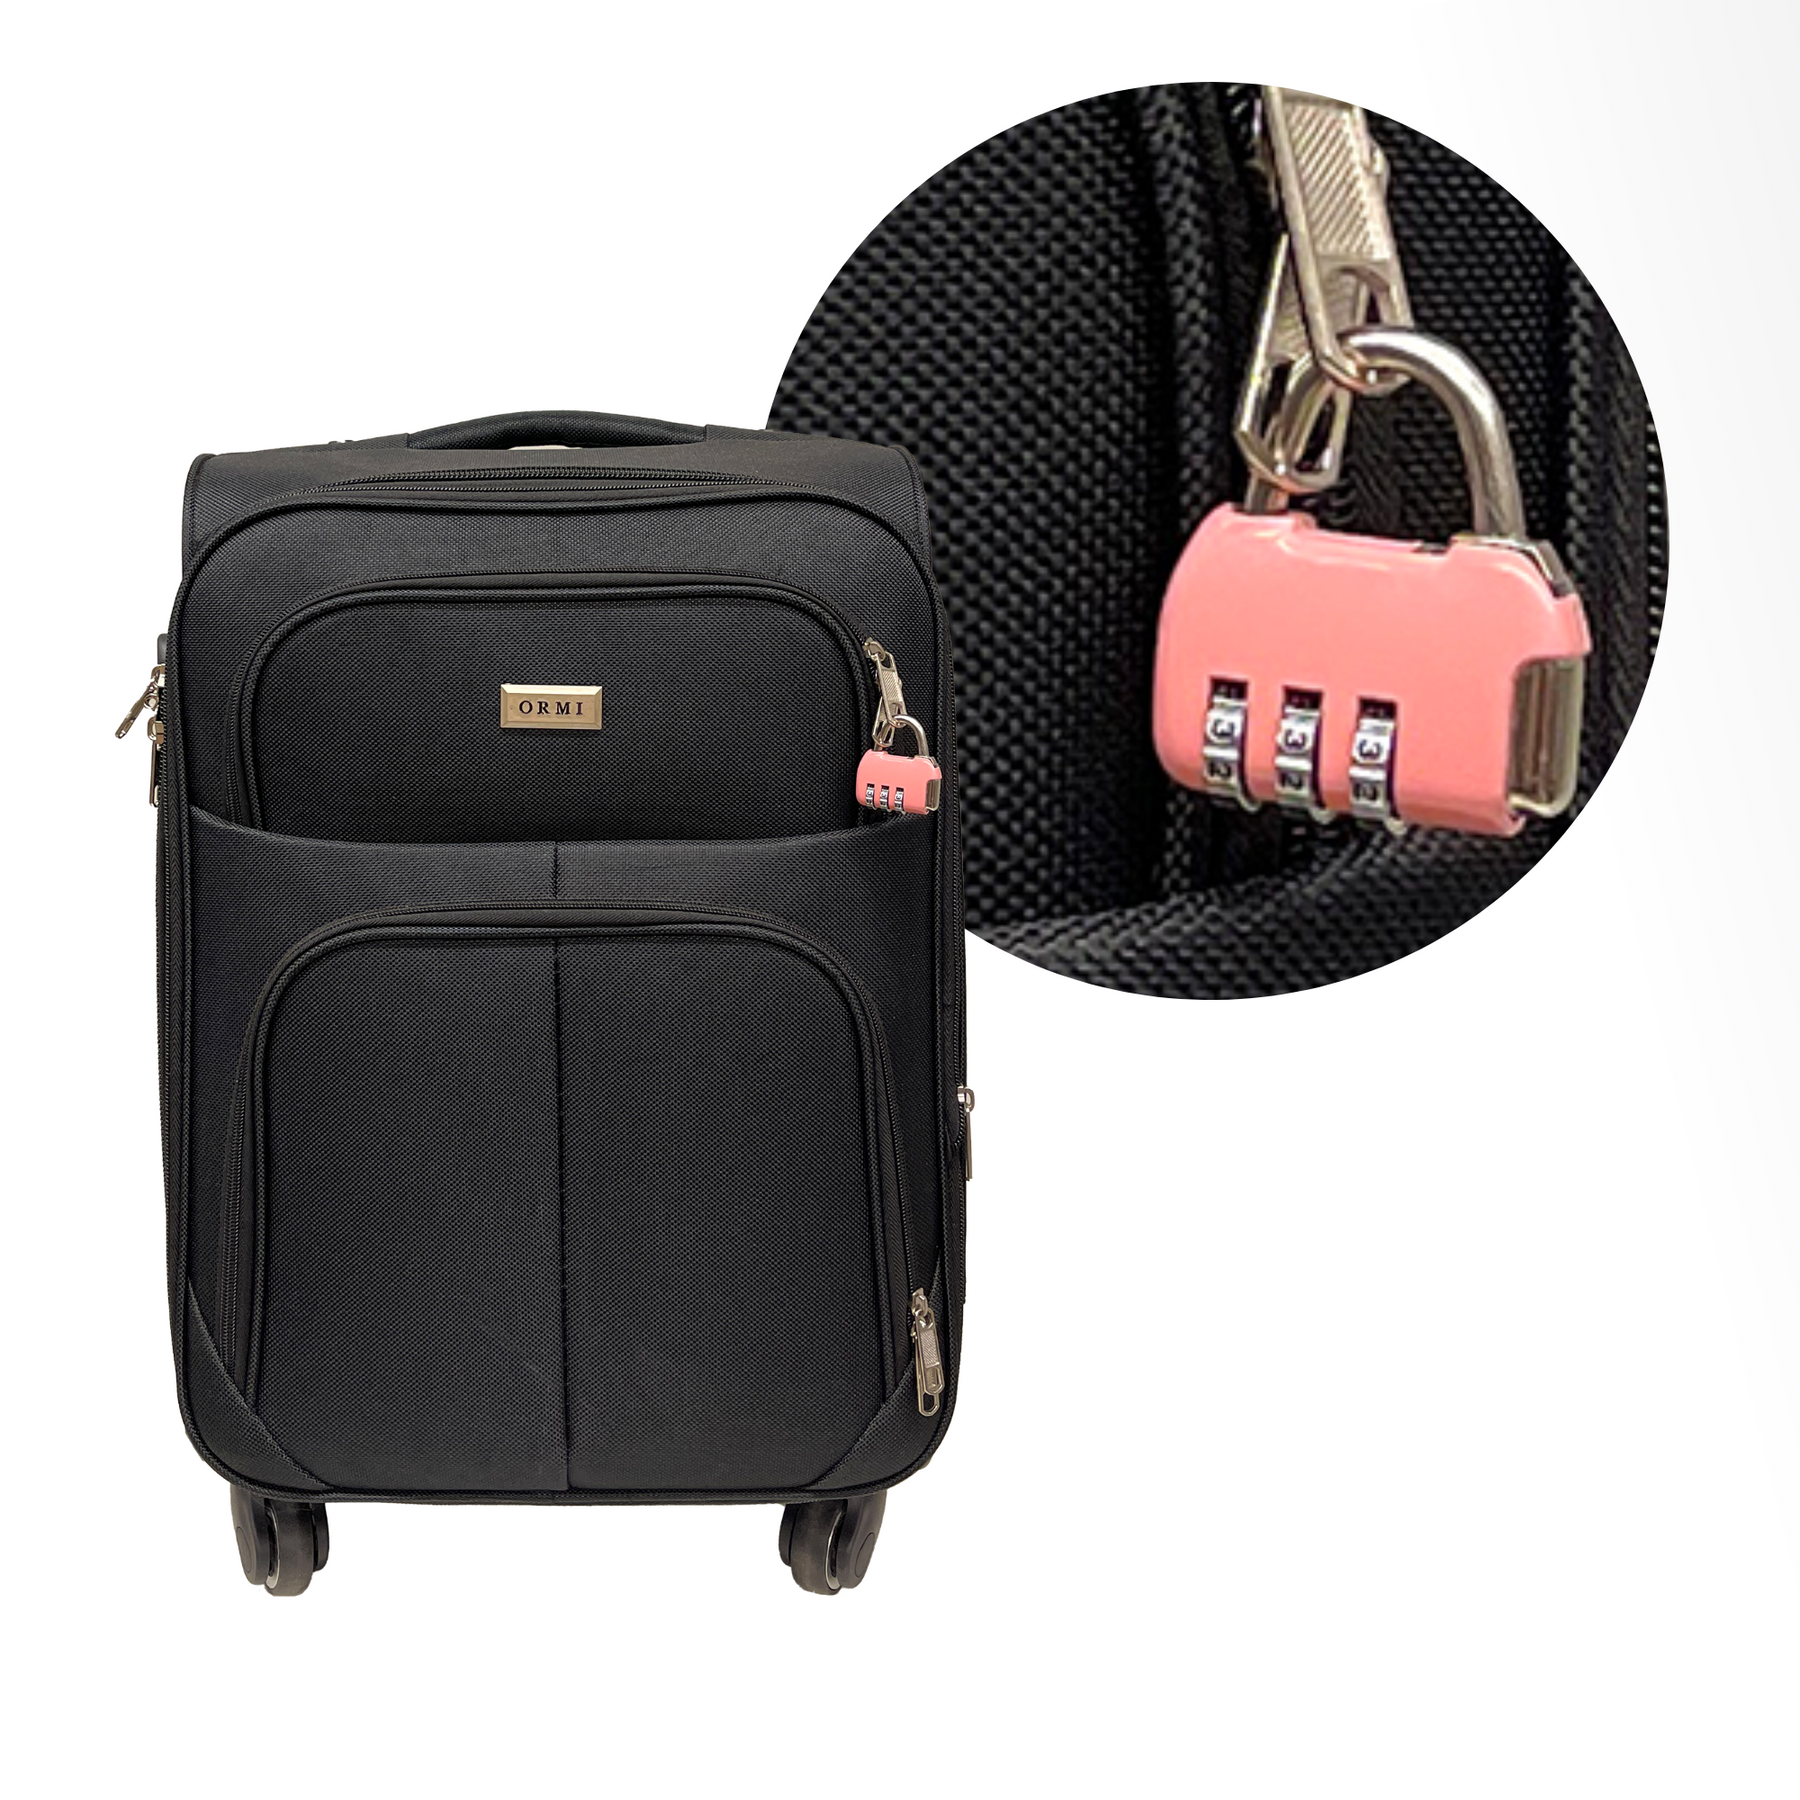 Cadeado de combinação de 3 dígitos para mala, bagagem, bolsa de viagem e mochilas